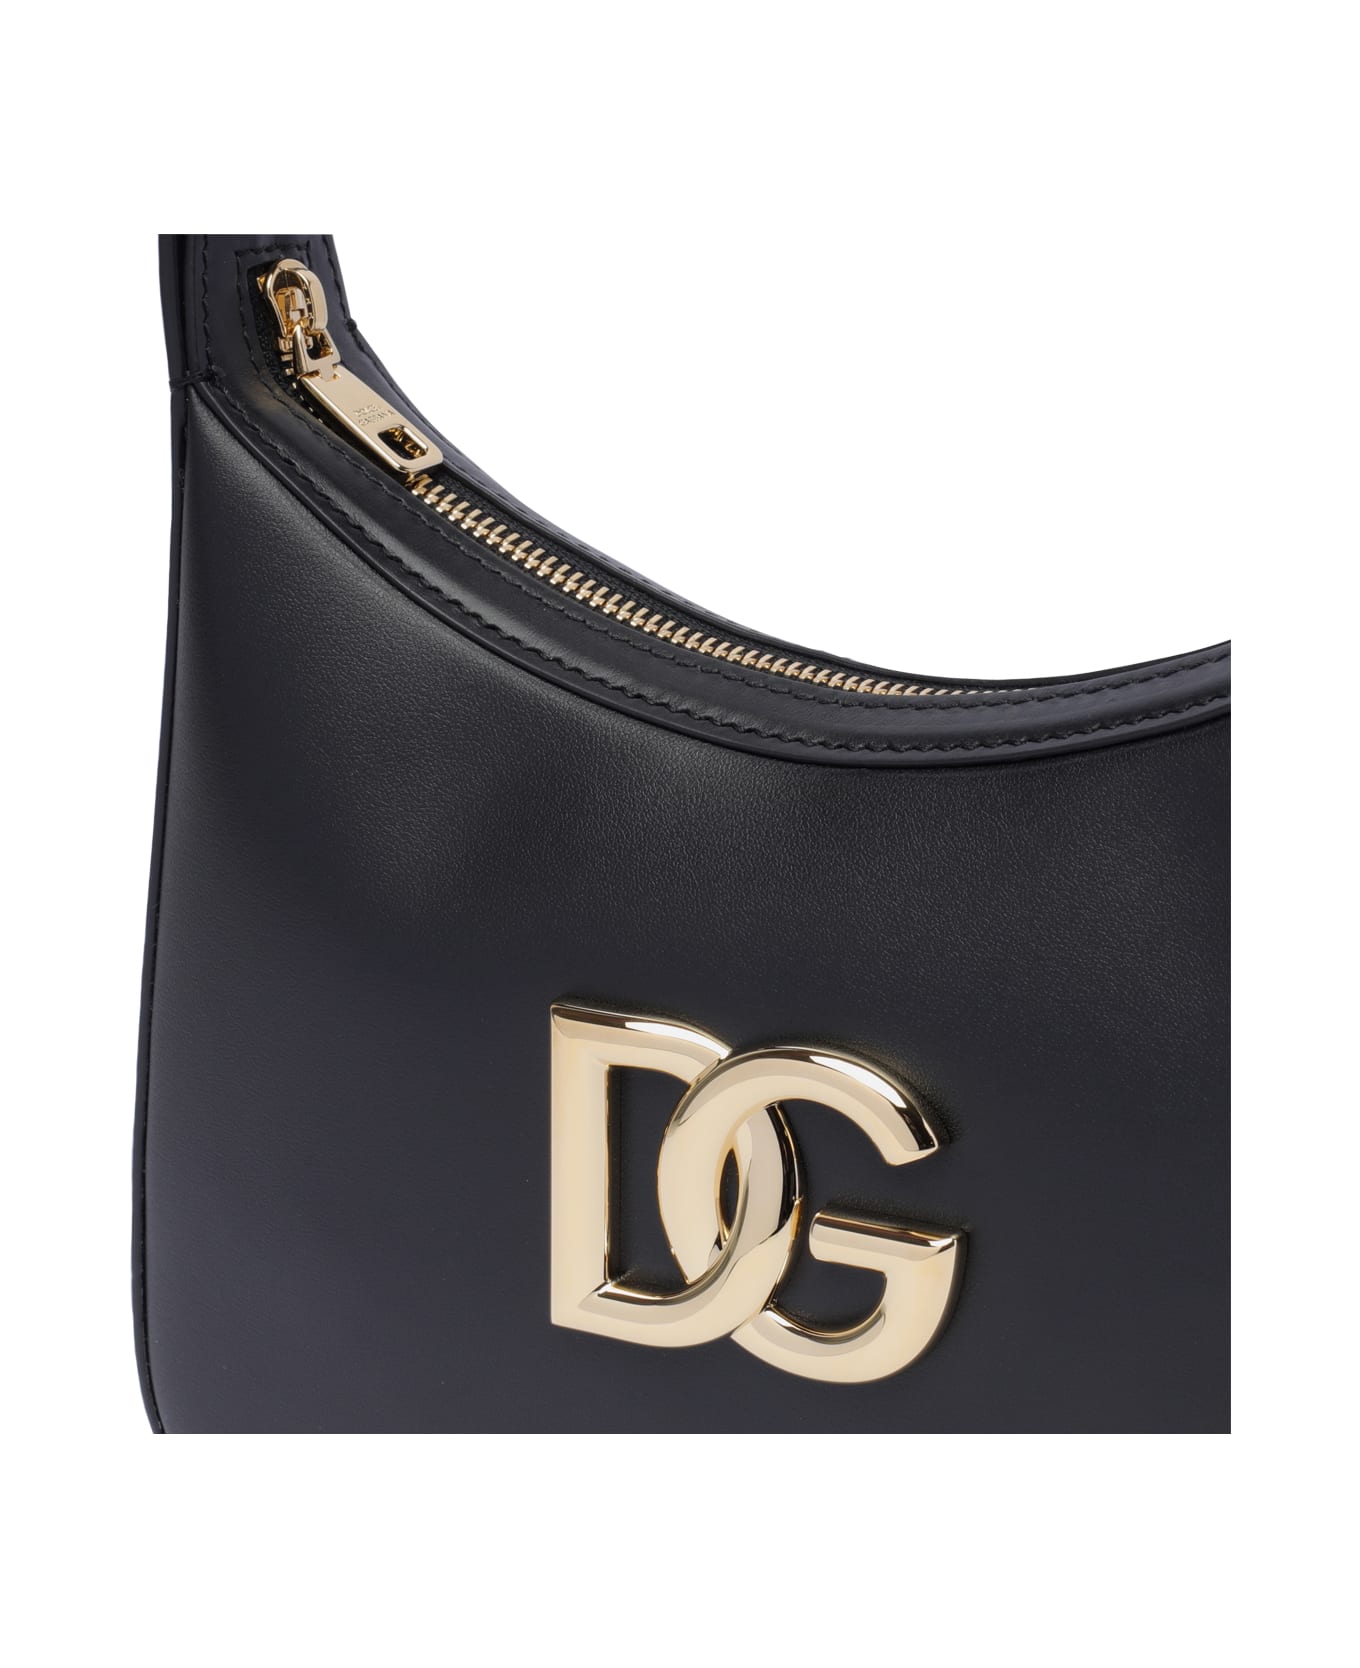 Dolce & Gabbana 3.5 Shoulder Bag - Nero トートバッグ